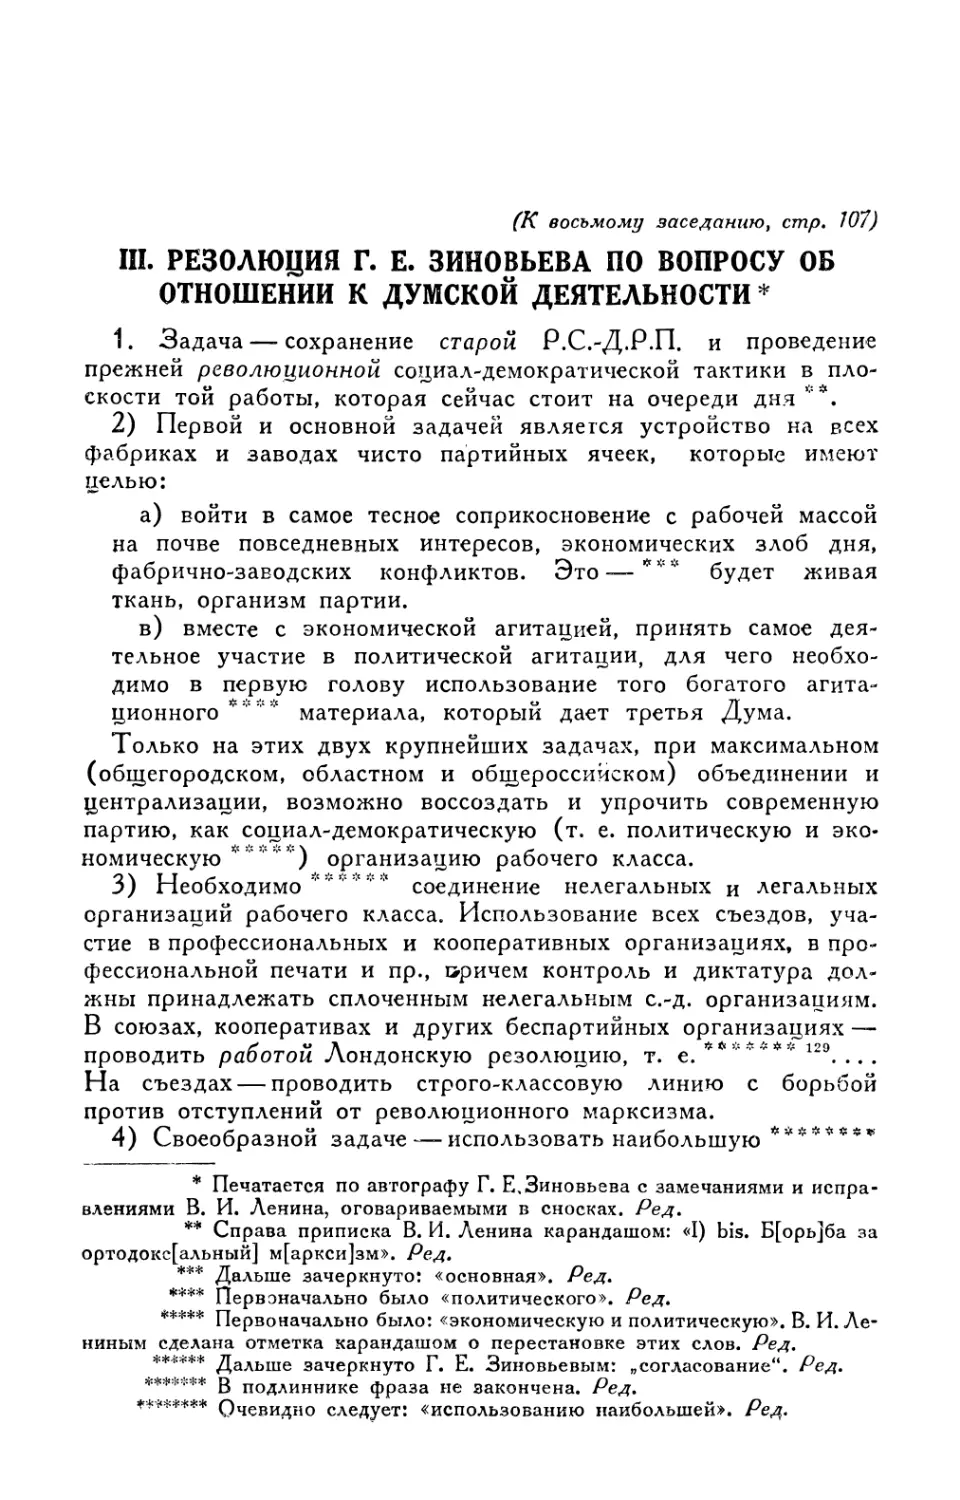 III. Резолюция Г. Е. Зиновьева по вопросу об отношении к думской деятельности